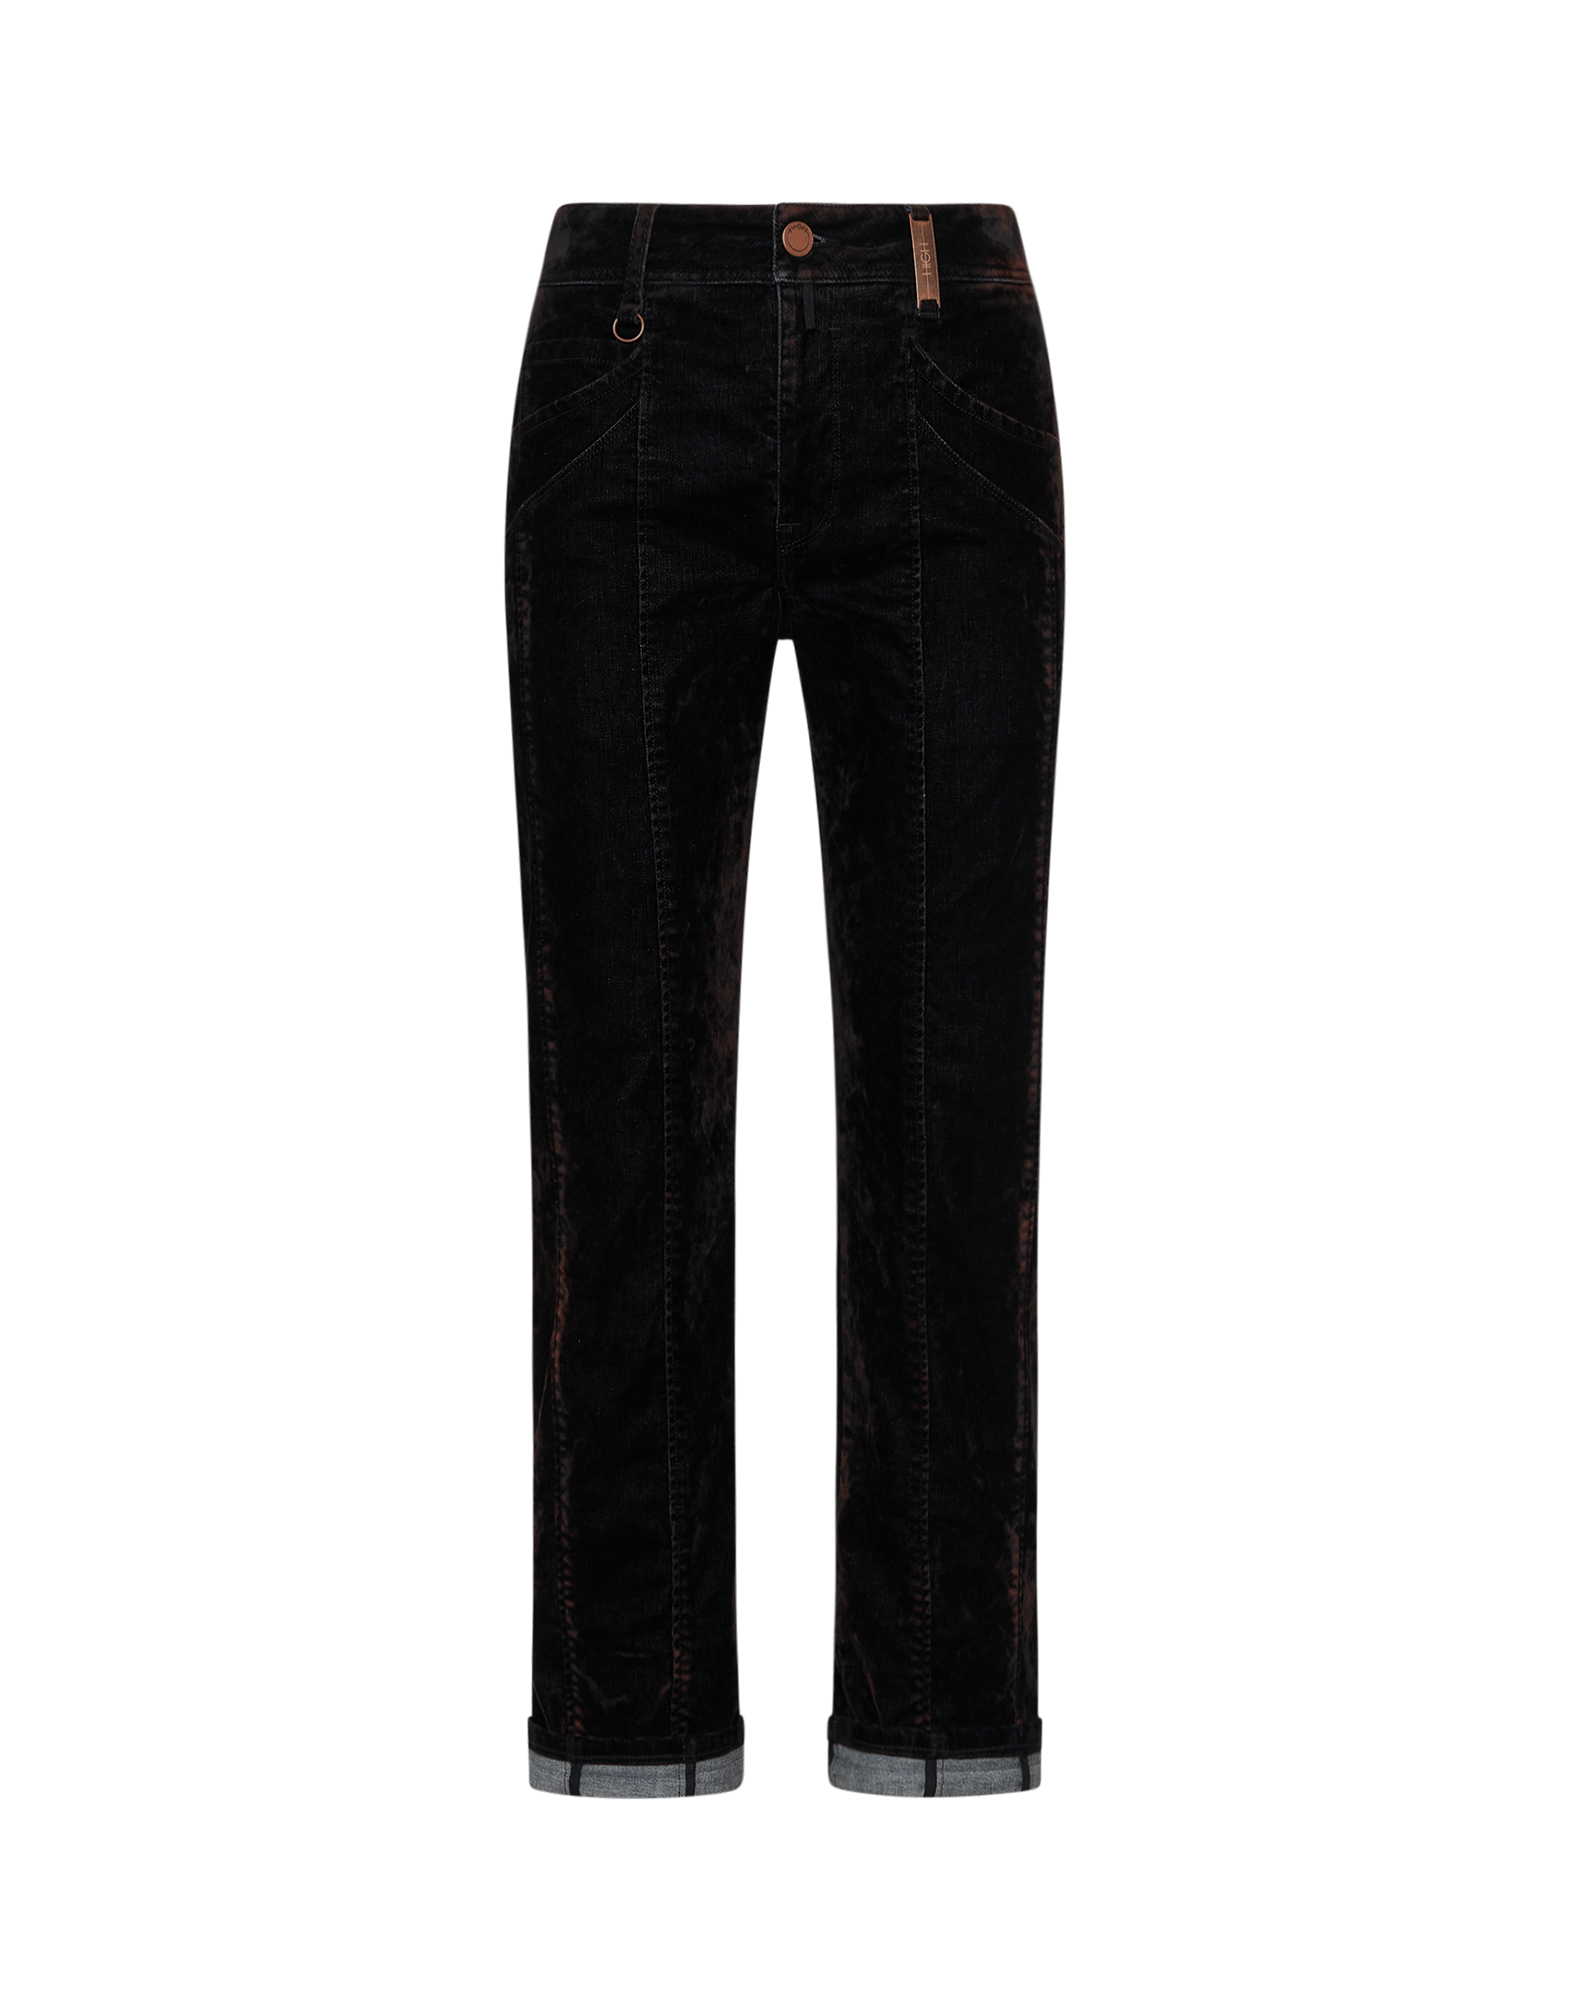 Bein Samt-Flockdruck mit genähtem INTERUPT: schwarzem Jeans mit